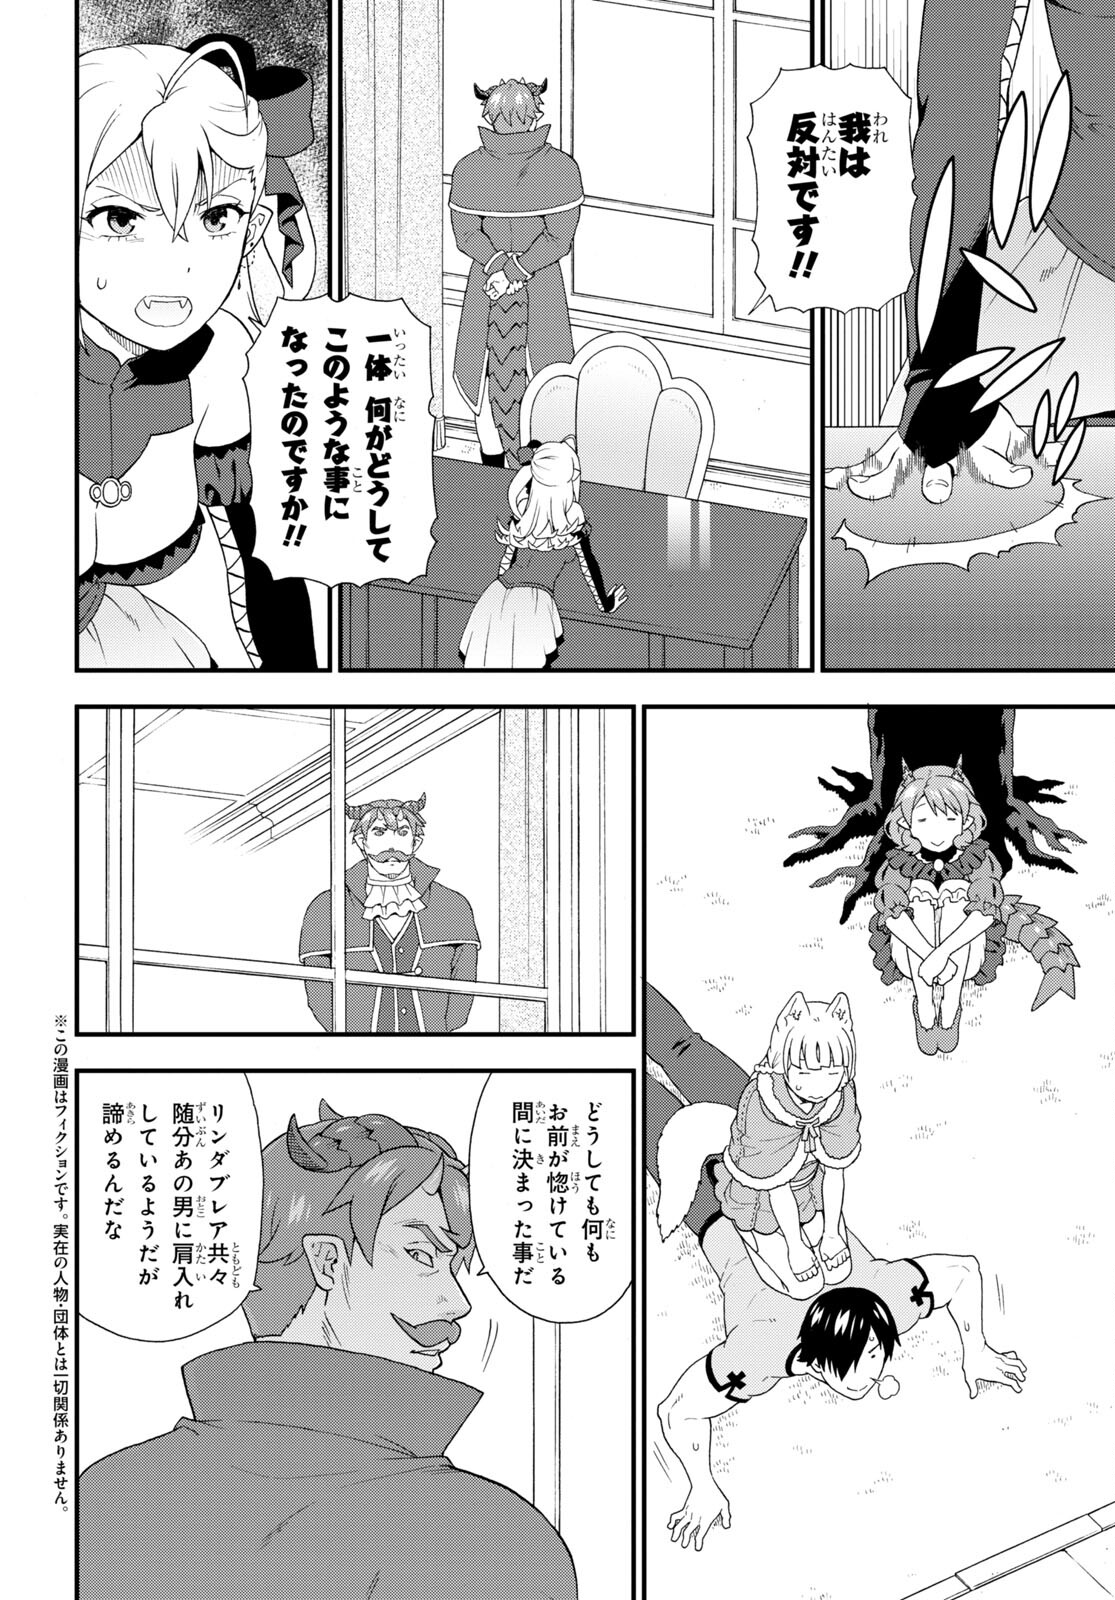 Kemono Michi - Chapter 50 - Page 2